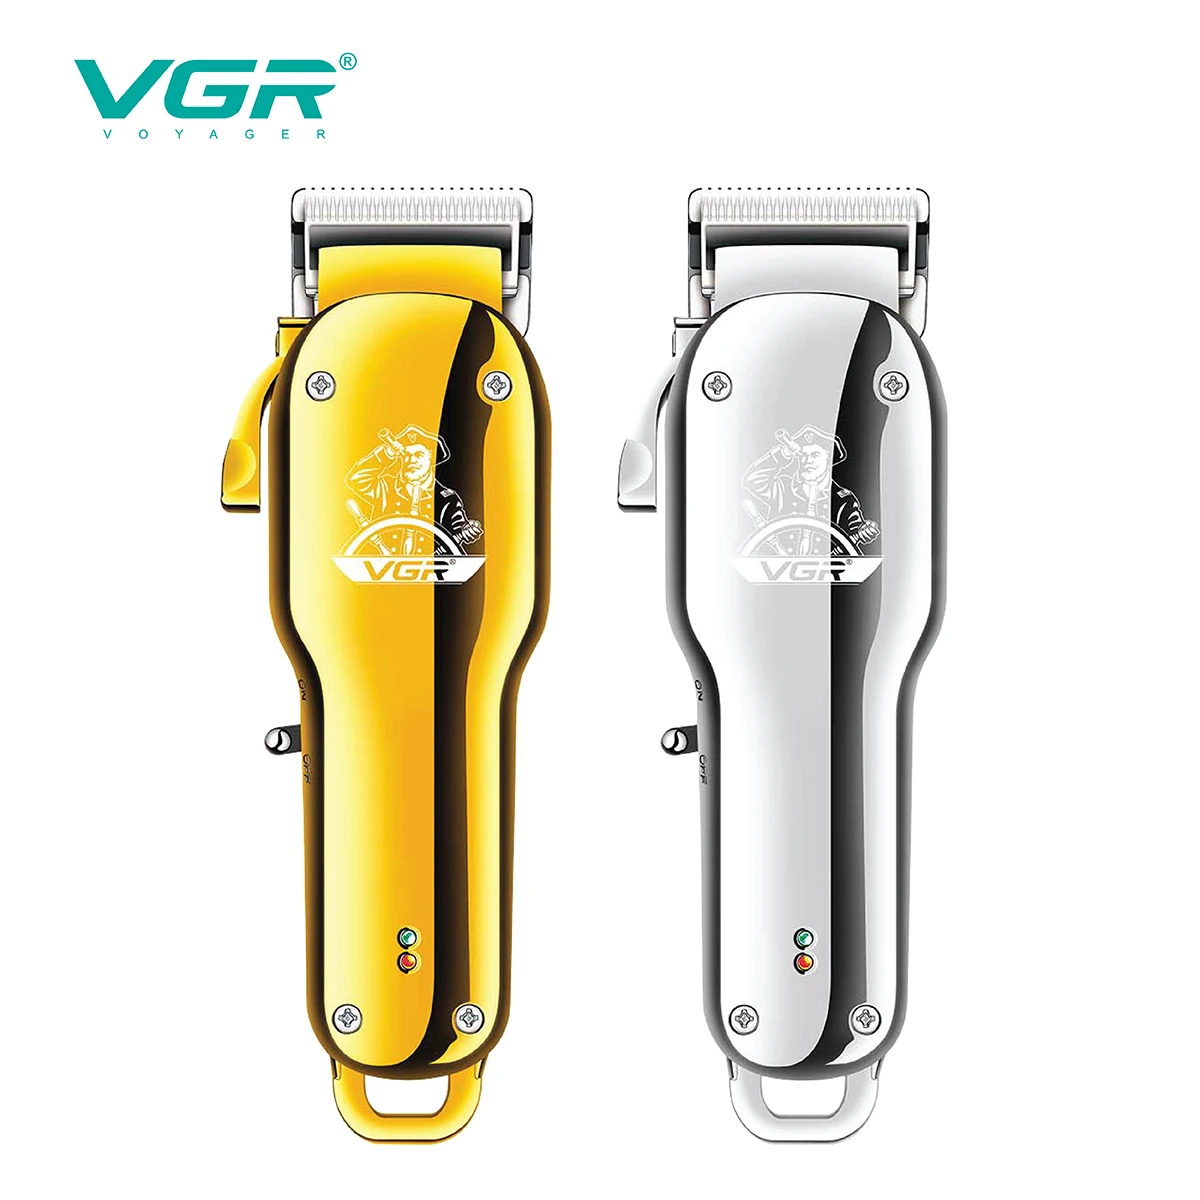 VGR Tagliacapelli elettrico Cordless Macchina per il taglio dei capelli Professionale Tagliacapelli per uomo Macchina per tagliare i capelli Barbiere USB ricaricabile V-678